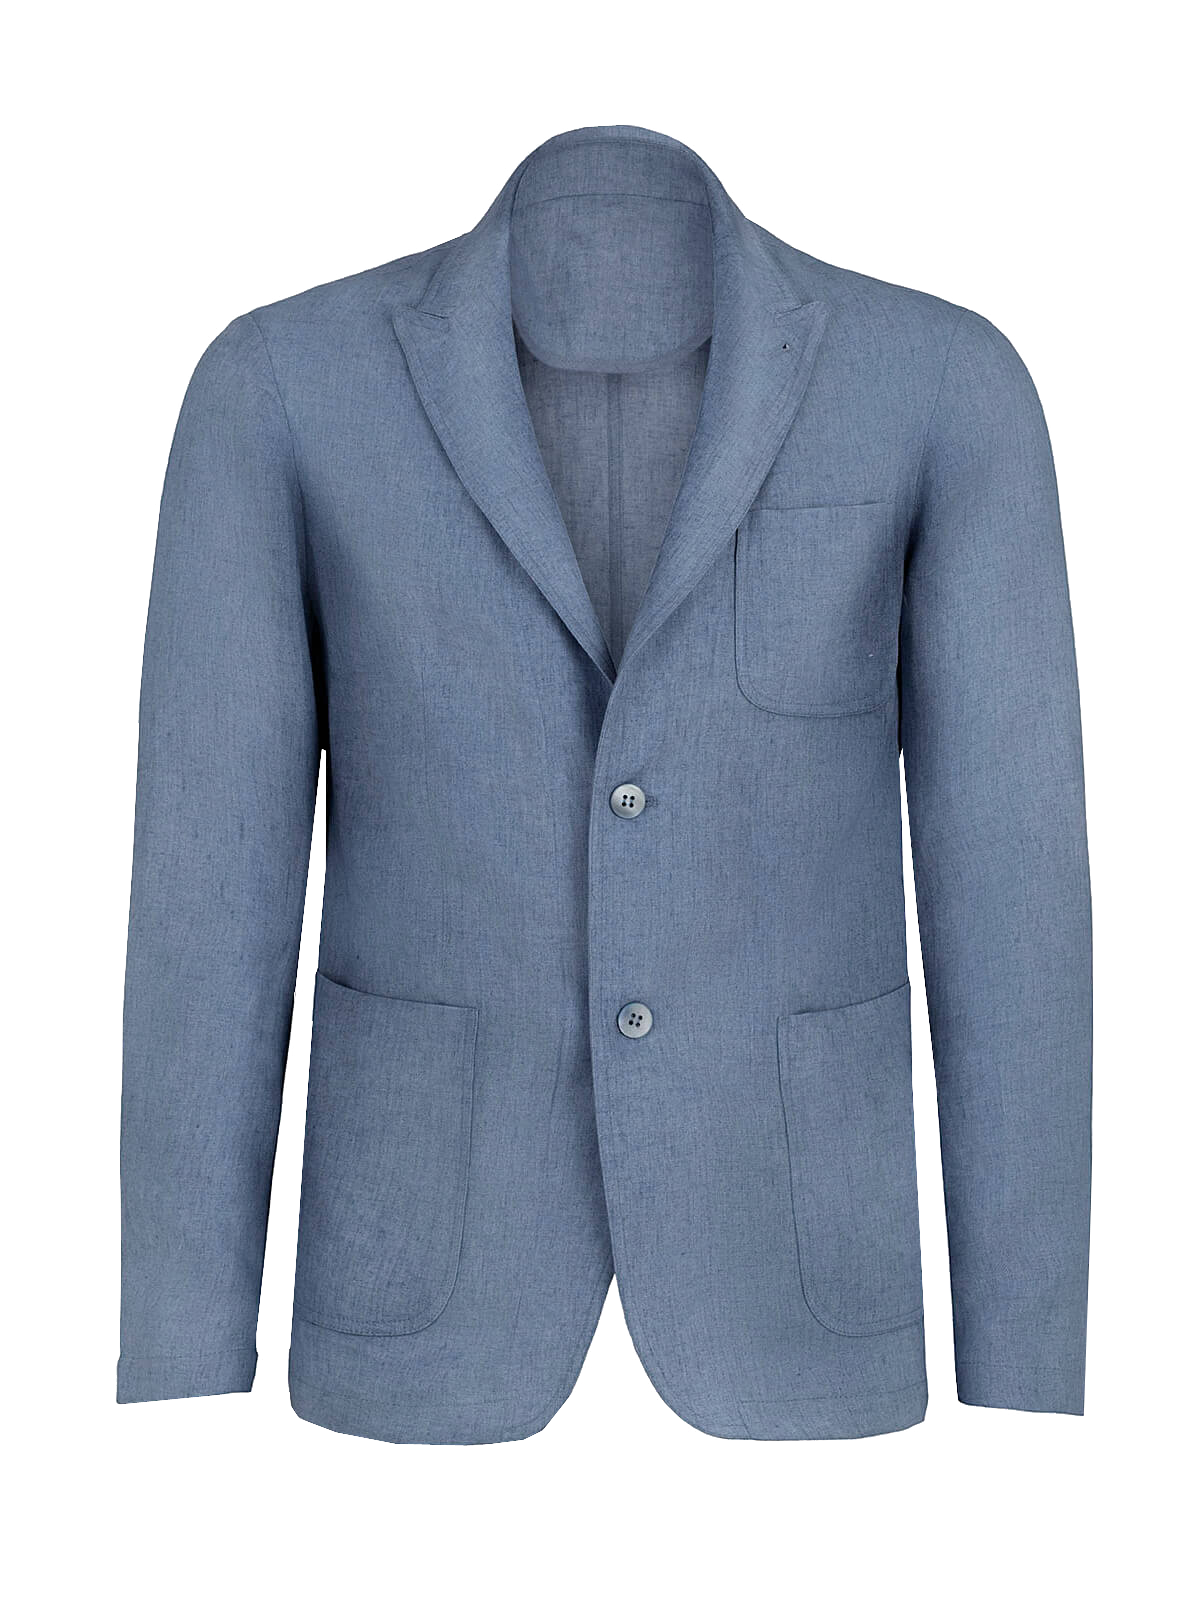 Giacca St. Tropez 100% Capri jeans linen jacket for man front